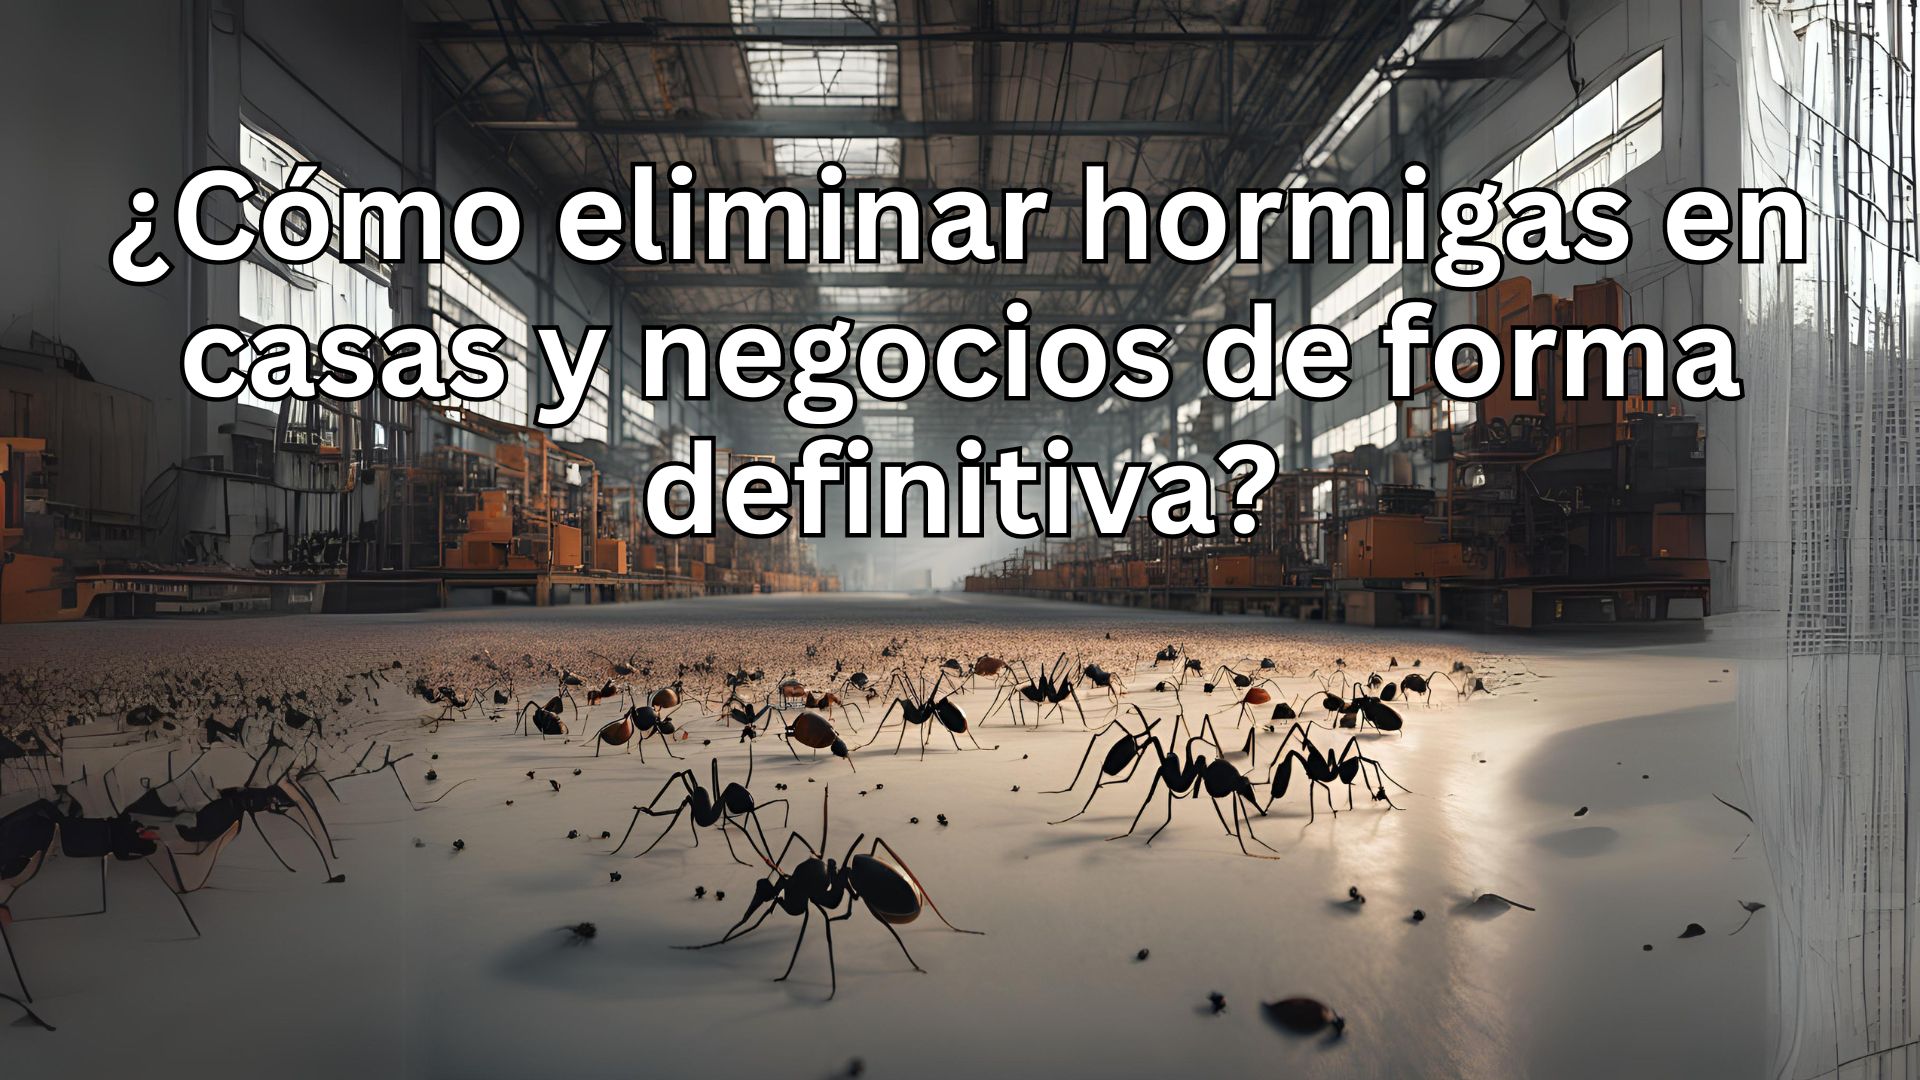 ¿Cómo eliminar hormigas en casas y negocios de forma definitiva?